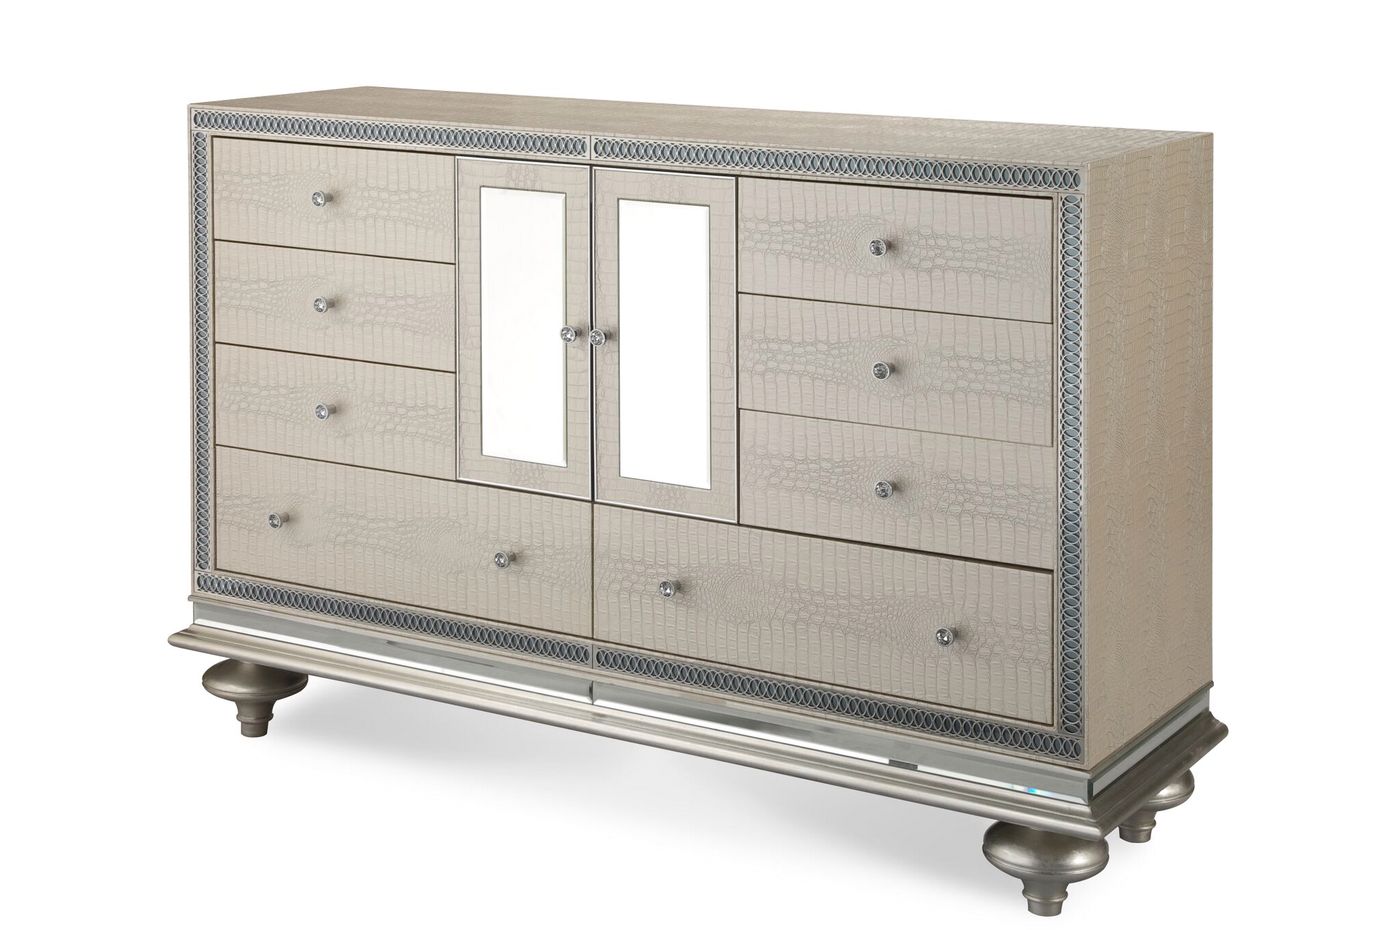 8-drawer dresser with hollywood swank bedroom furniture sets